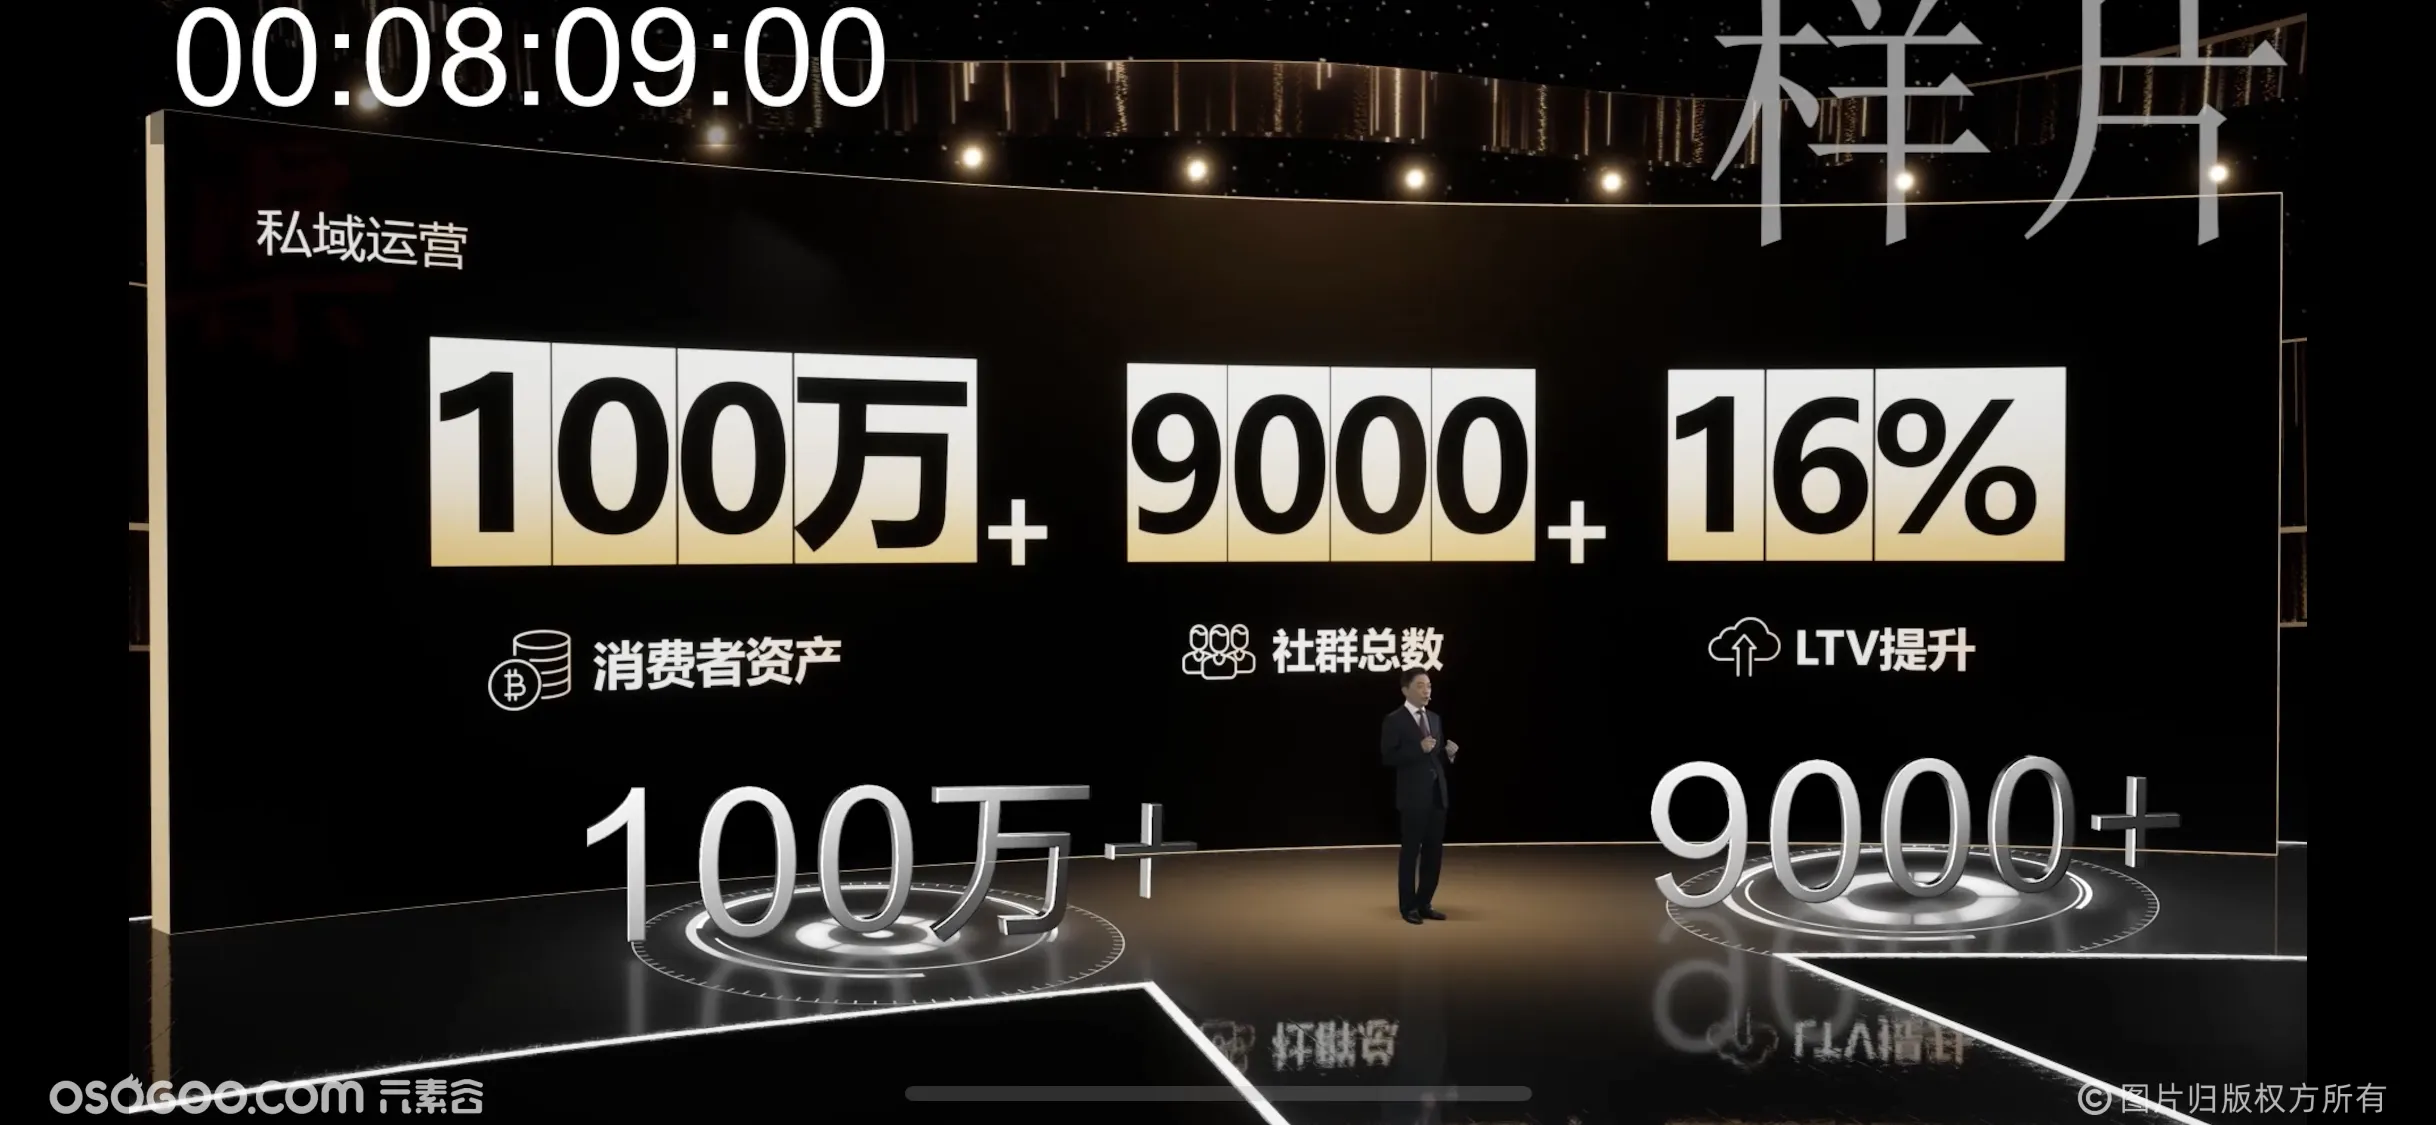 上海家化线上发布会虚拟直播，拍摄过程